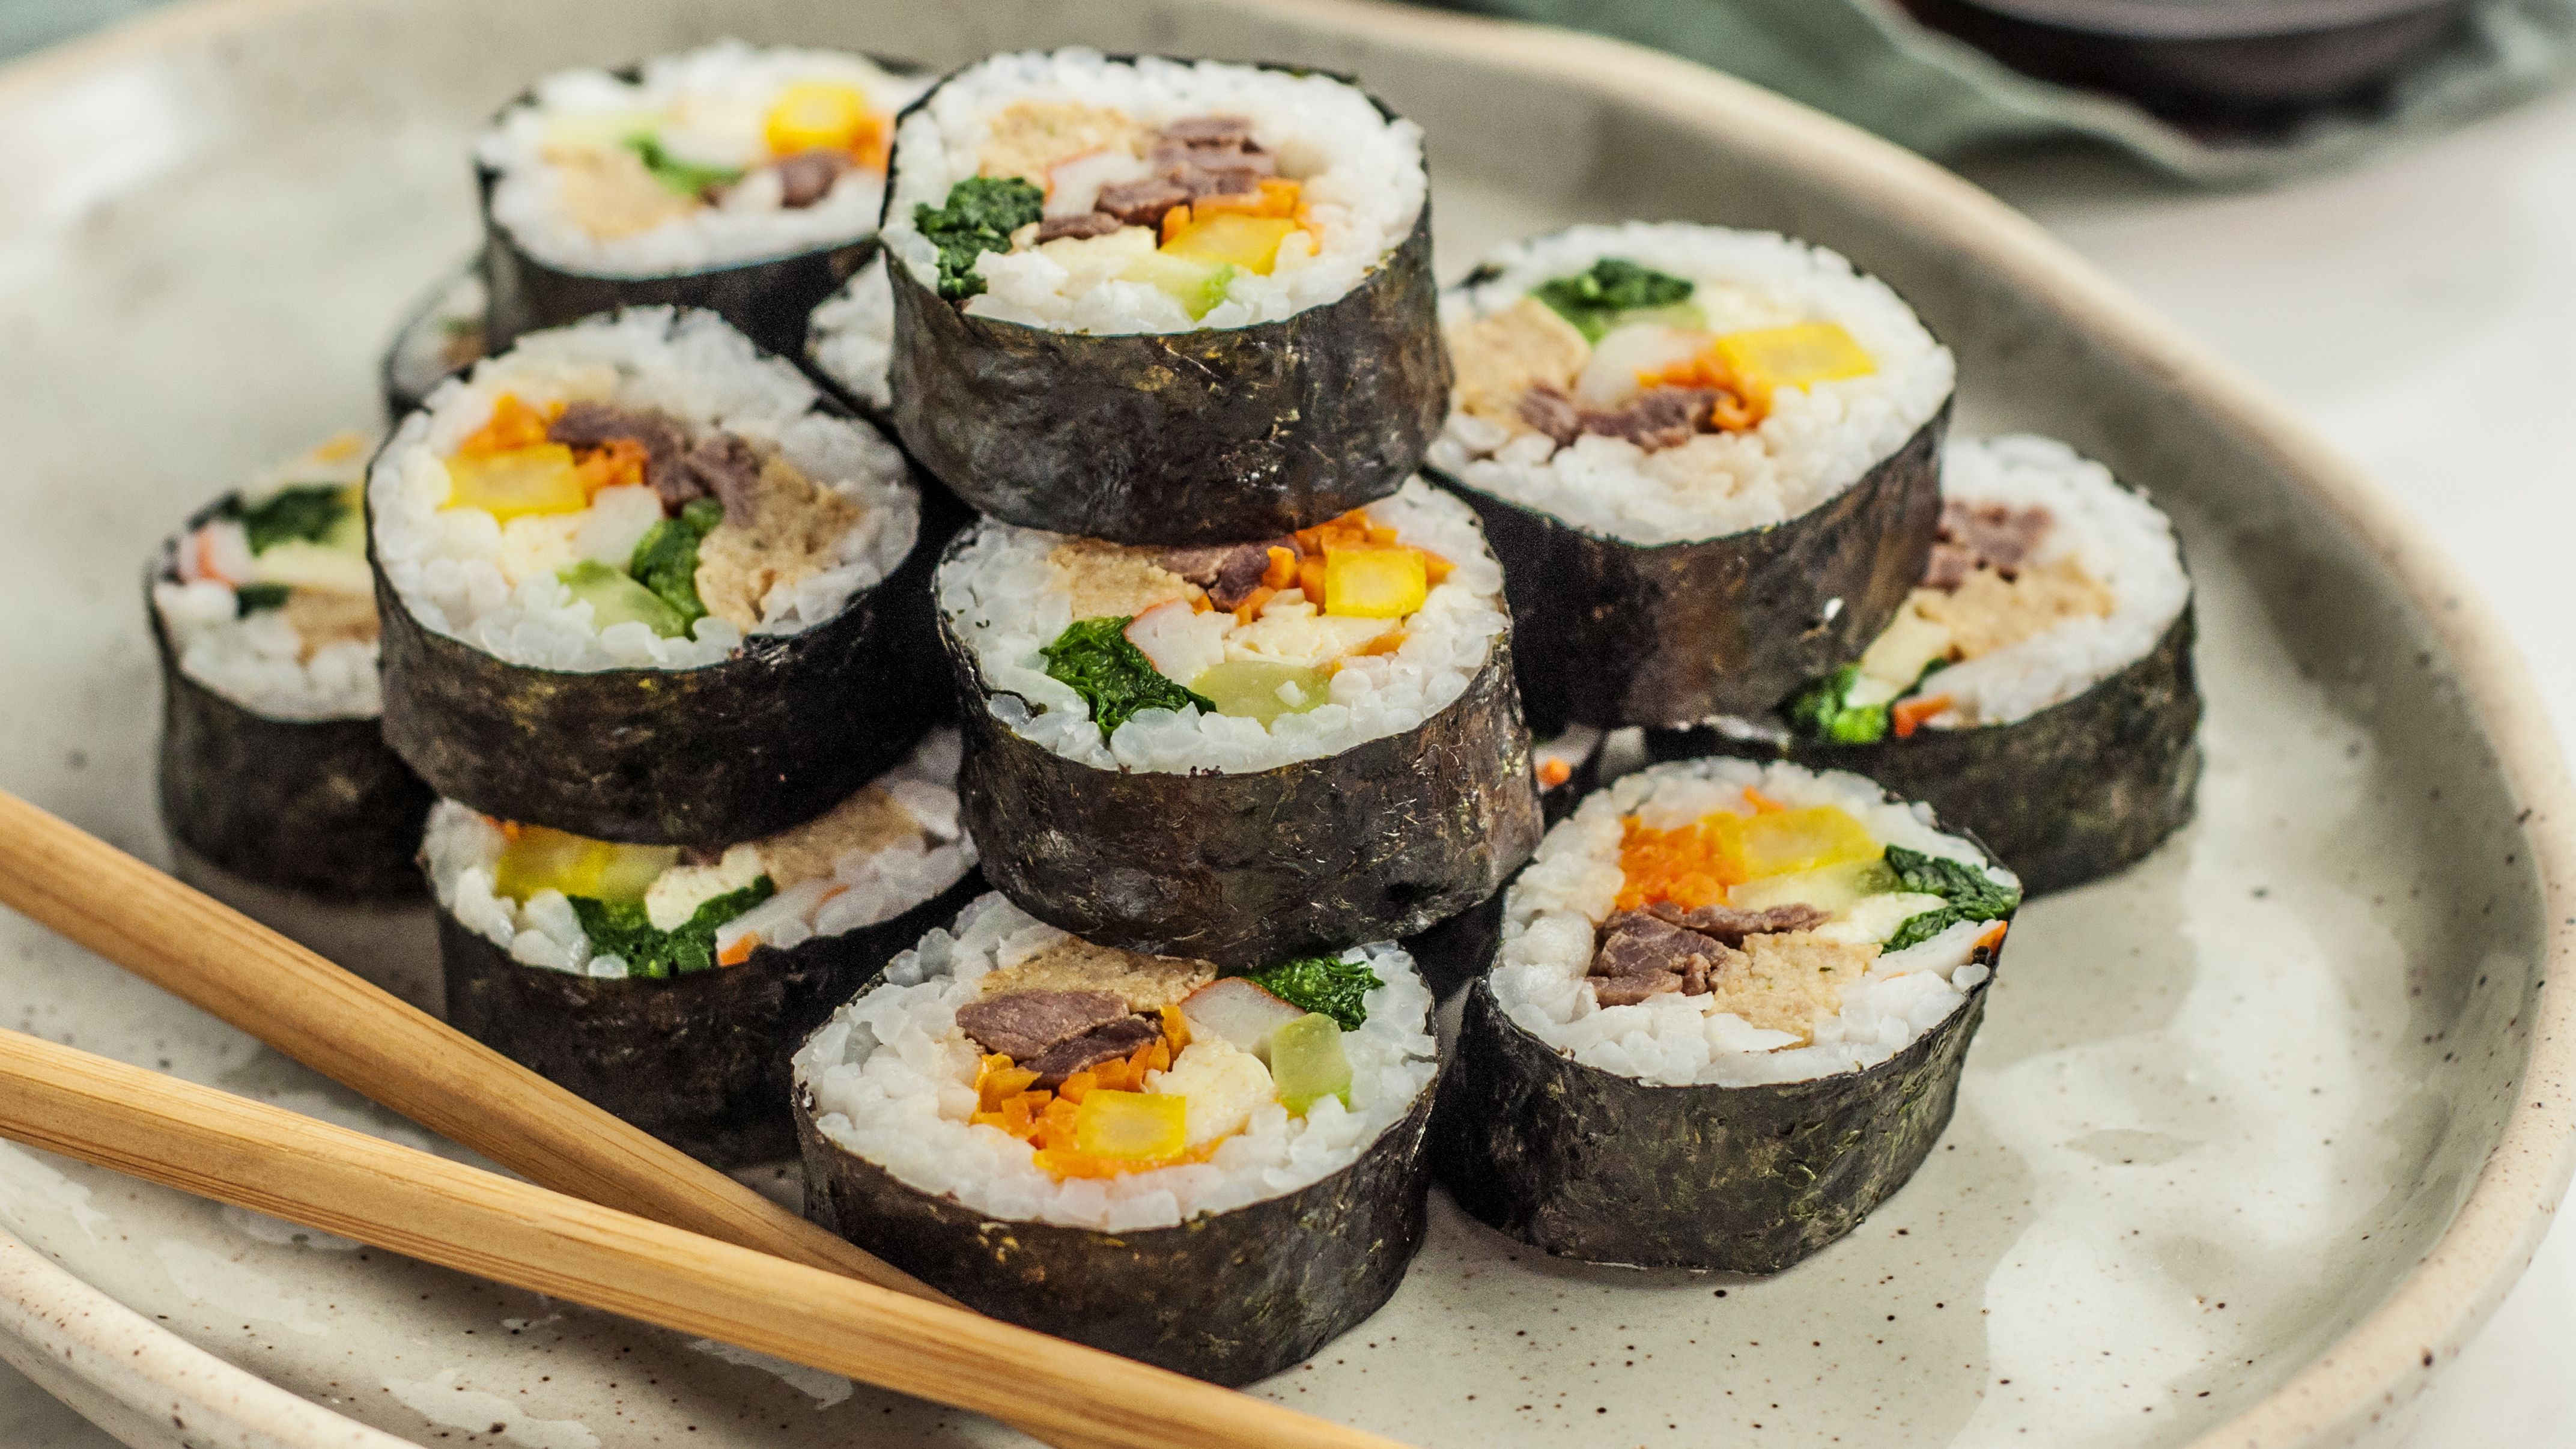 kimbap-korean-sushi-rolls-2118795-Hero-5b7dbdd346e0fb00250718b8.jpg